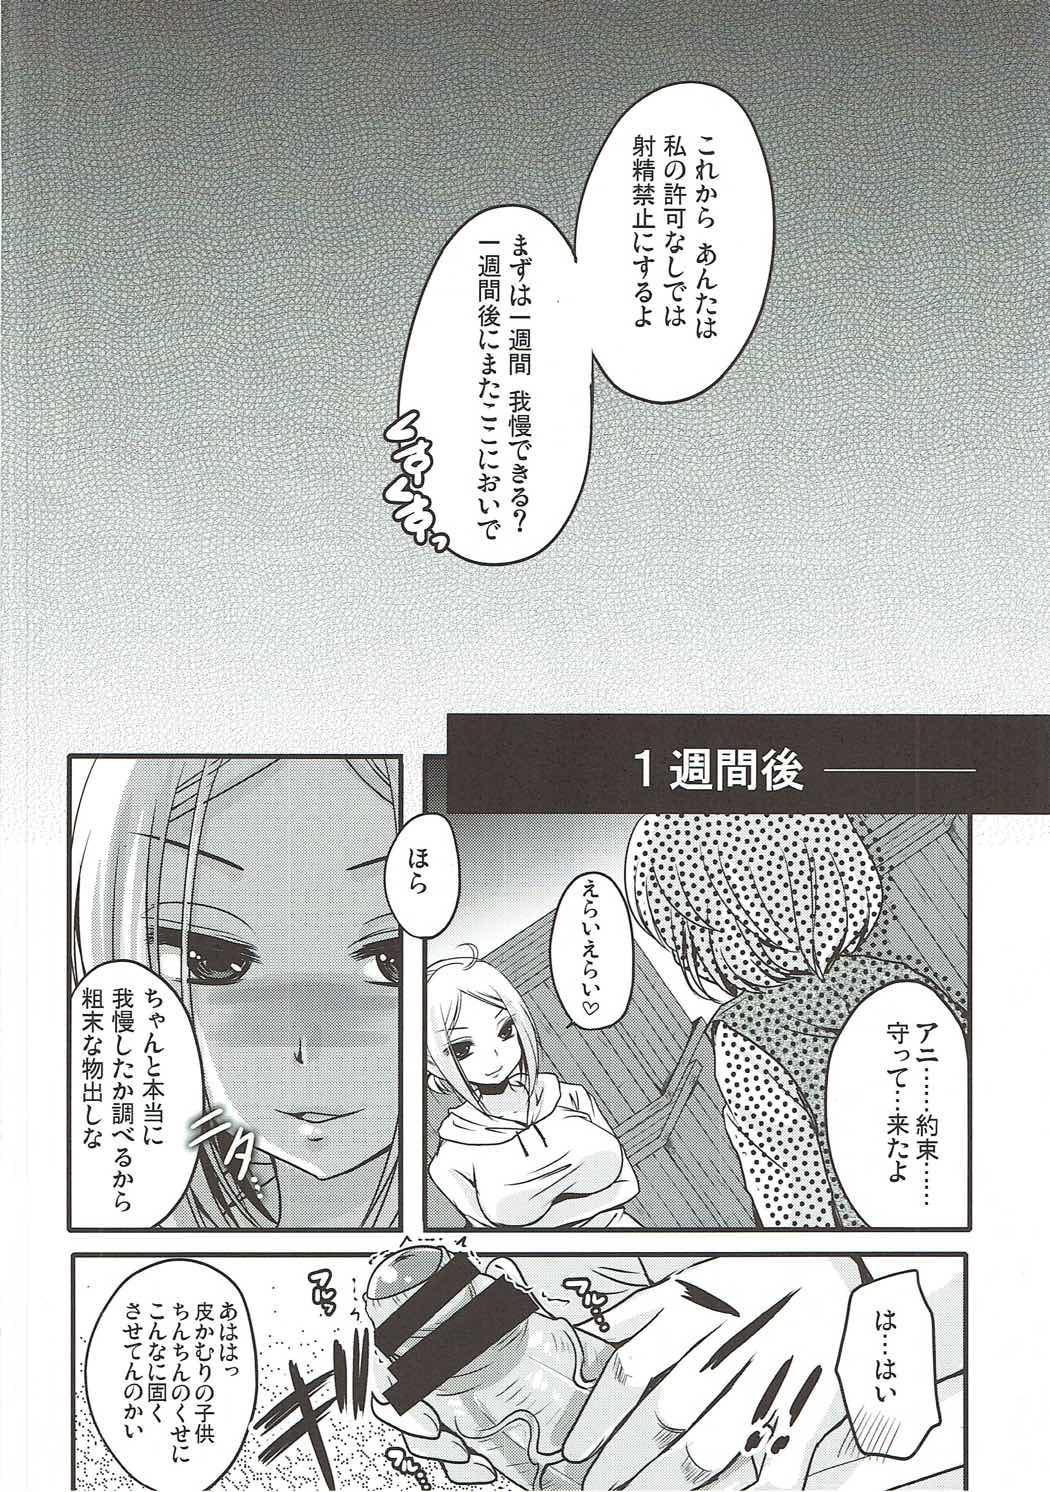 Couples Shasei Kanri Control Program - Shingeki no kyojin Juggs - Page 7